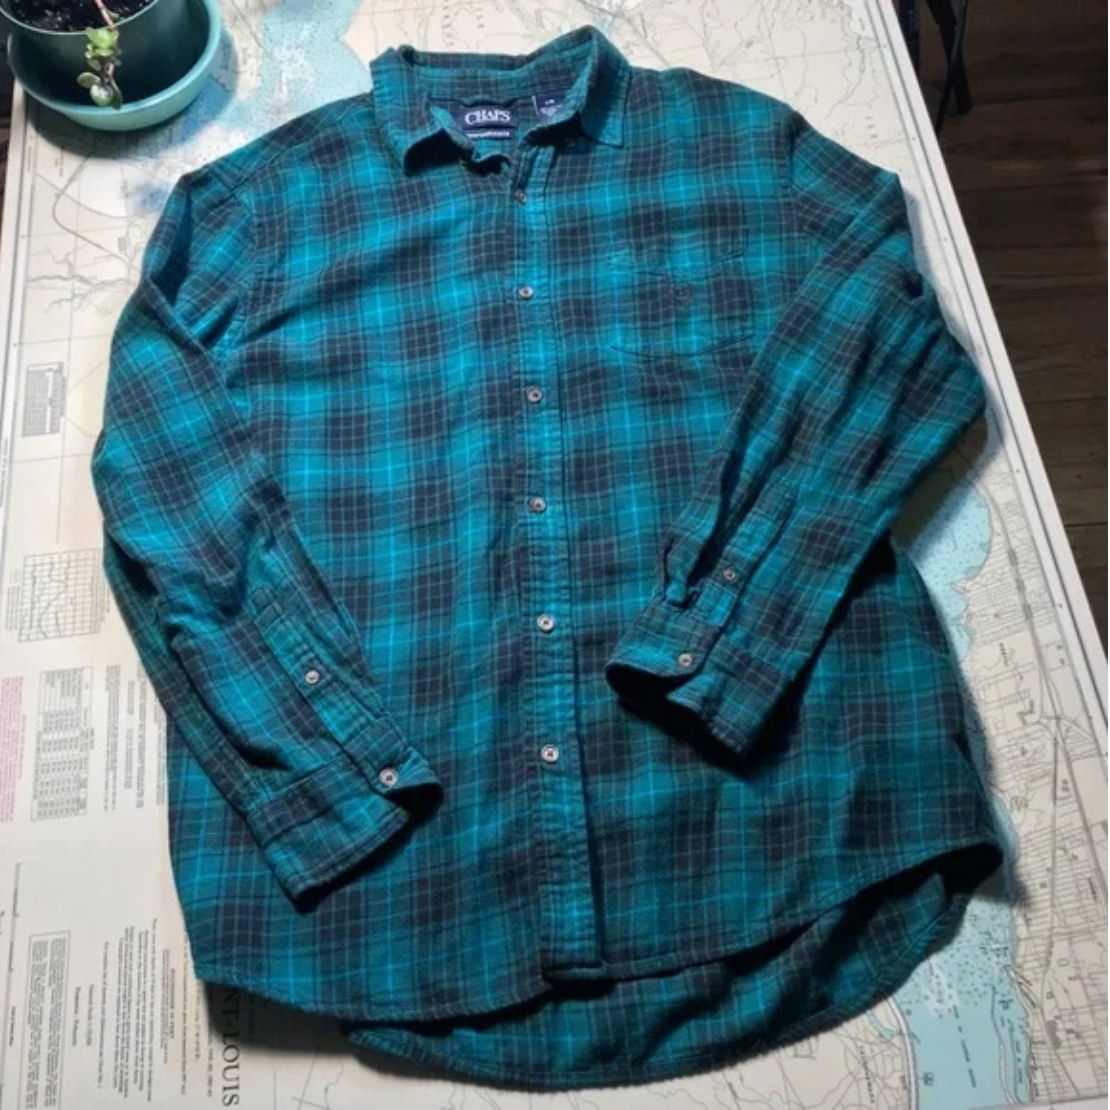 Vintage Chaps Plaid / Flannel Button Up Shirt